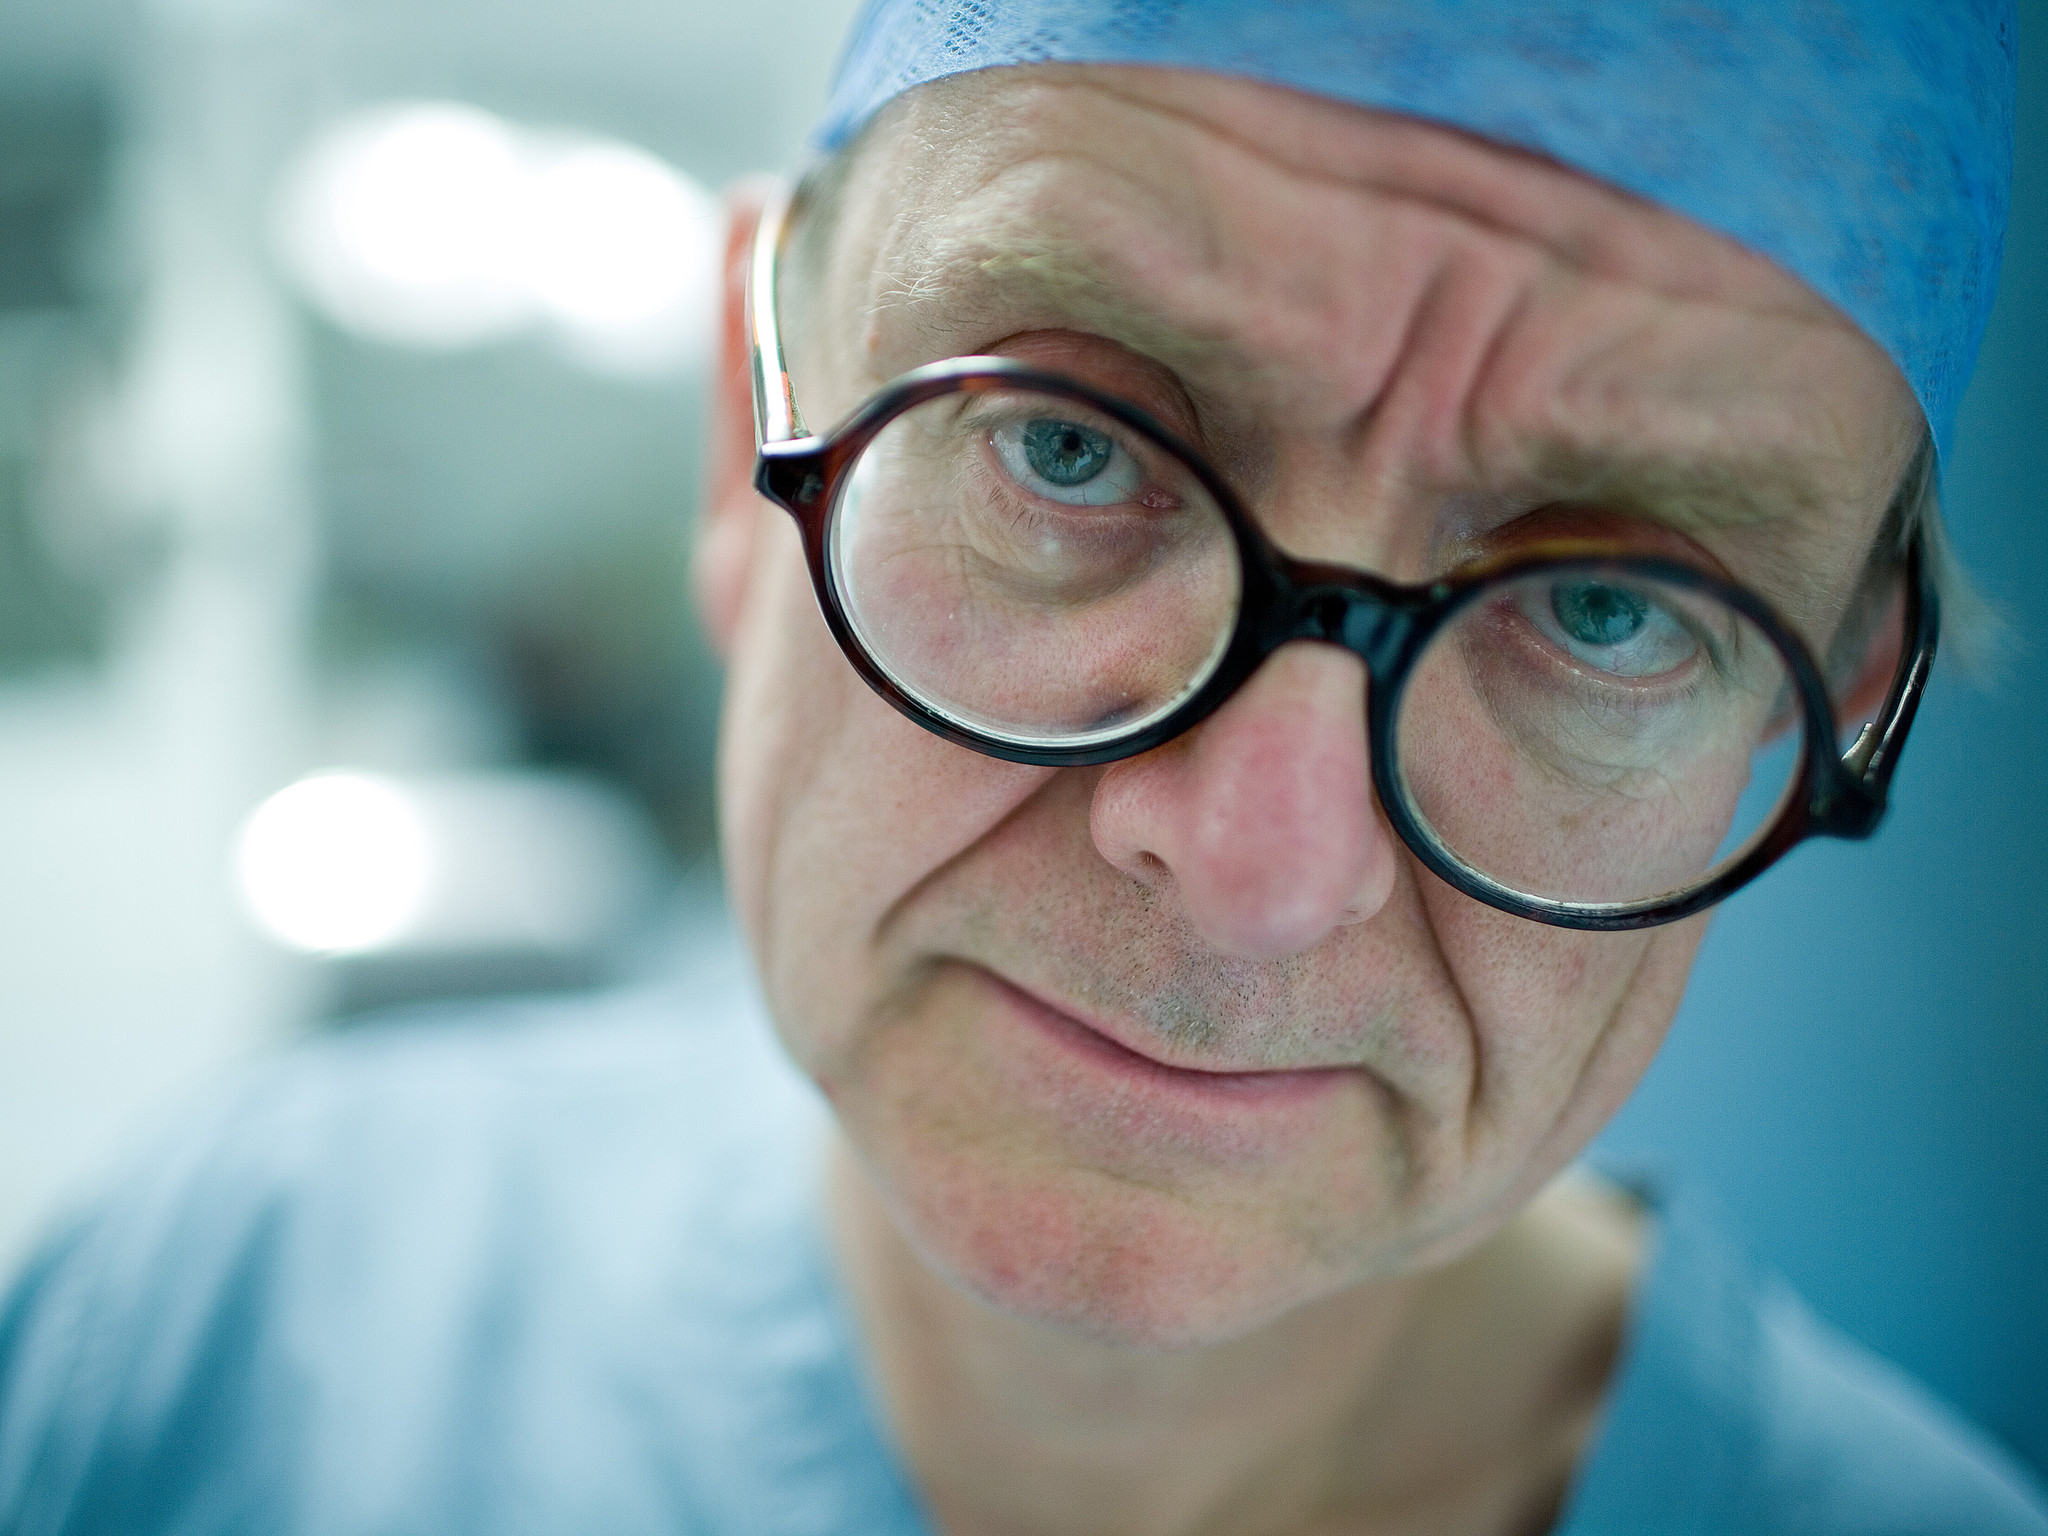 Activa  Henry Marsh: entrevistámos o neurocirurgião que fala abertamente  sobre erro médico